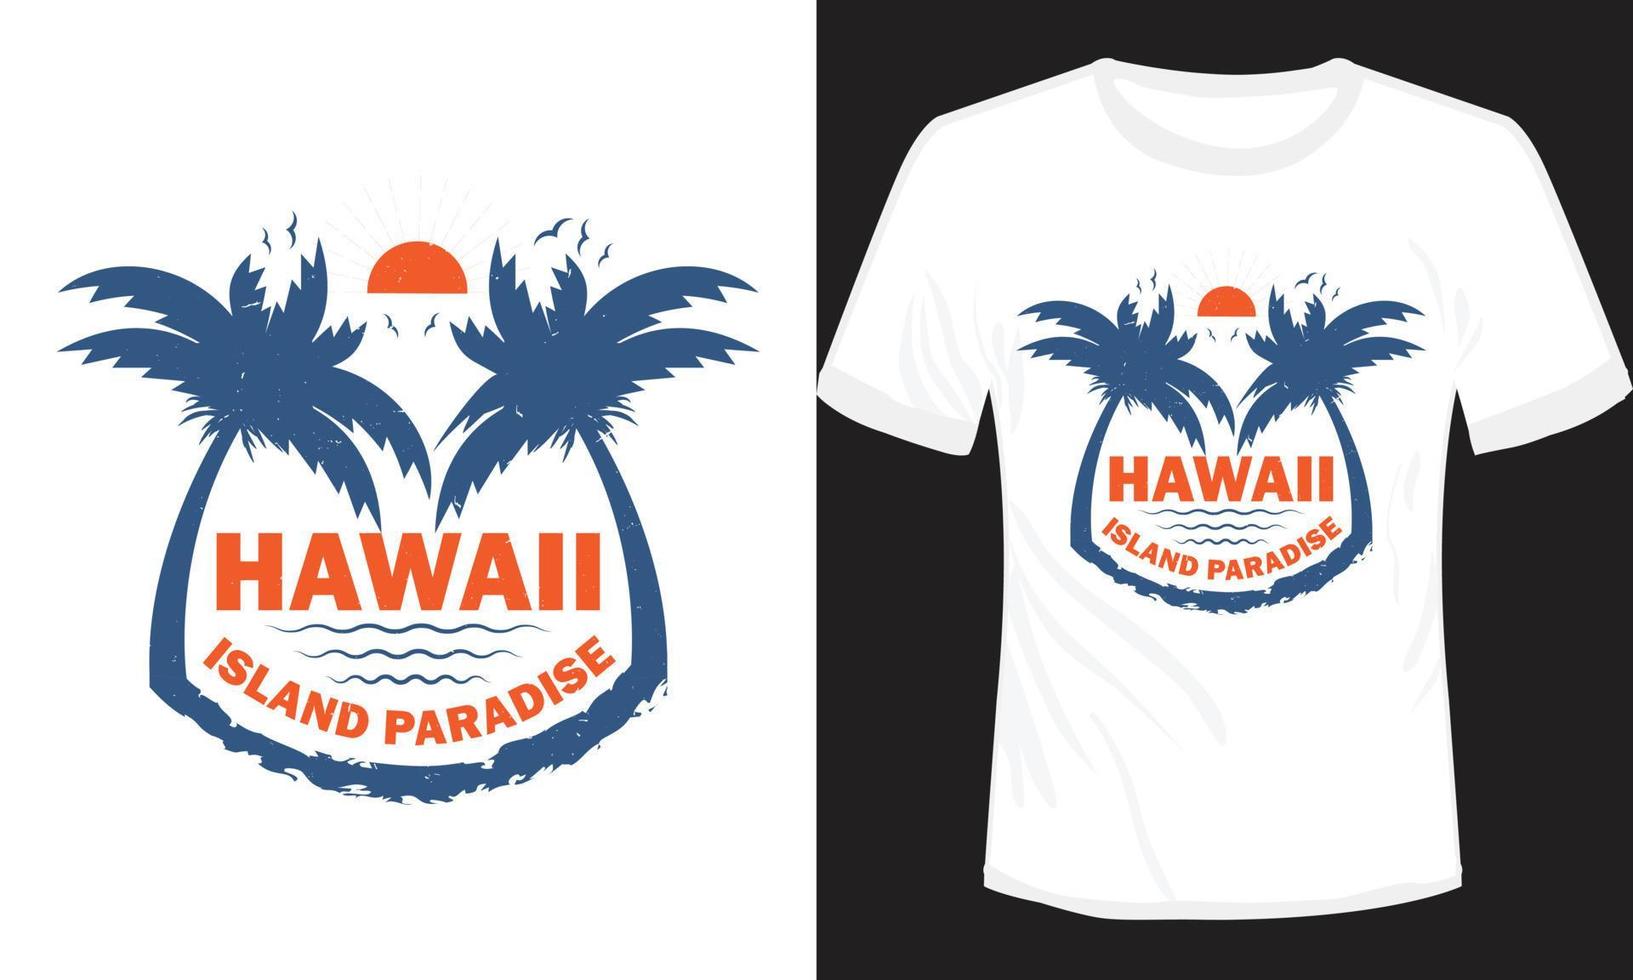 Hawaii eiland paradijs t-shirt ontwerp vector